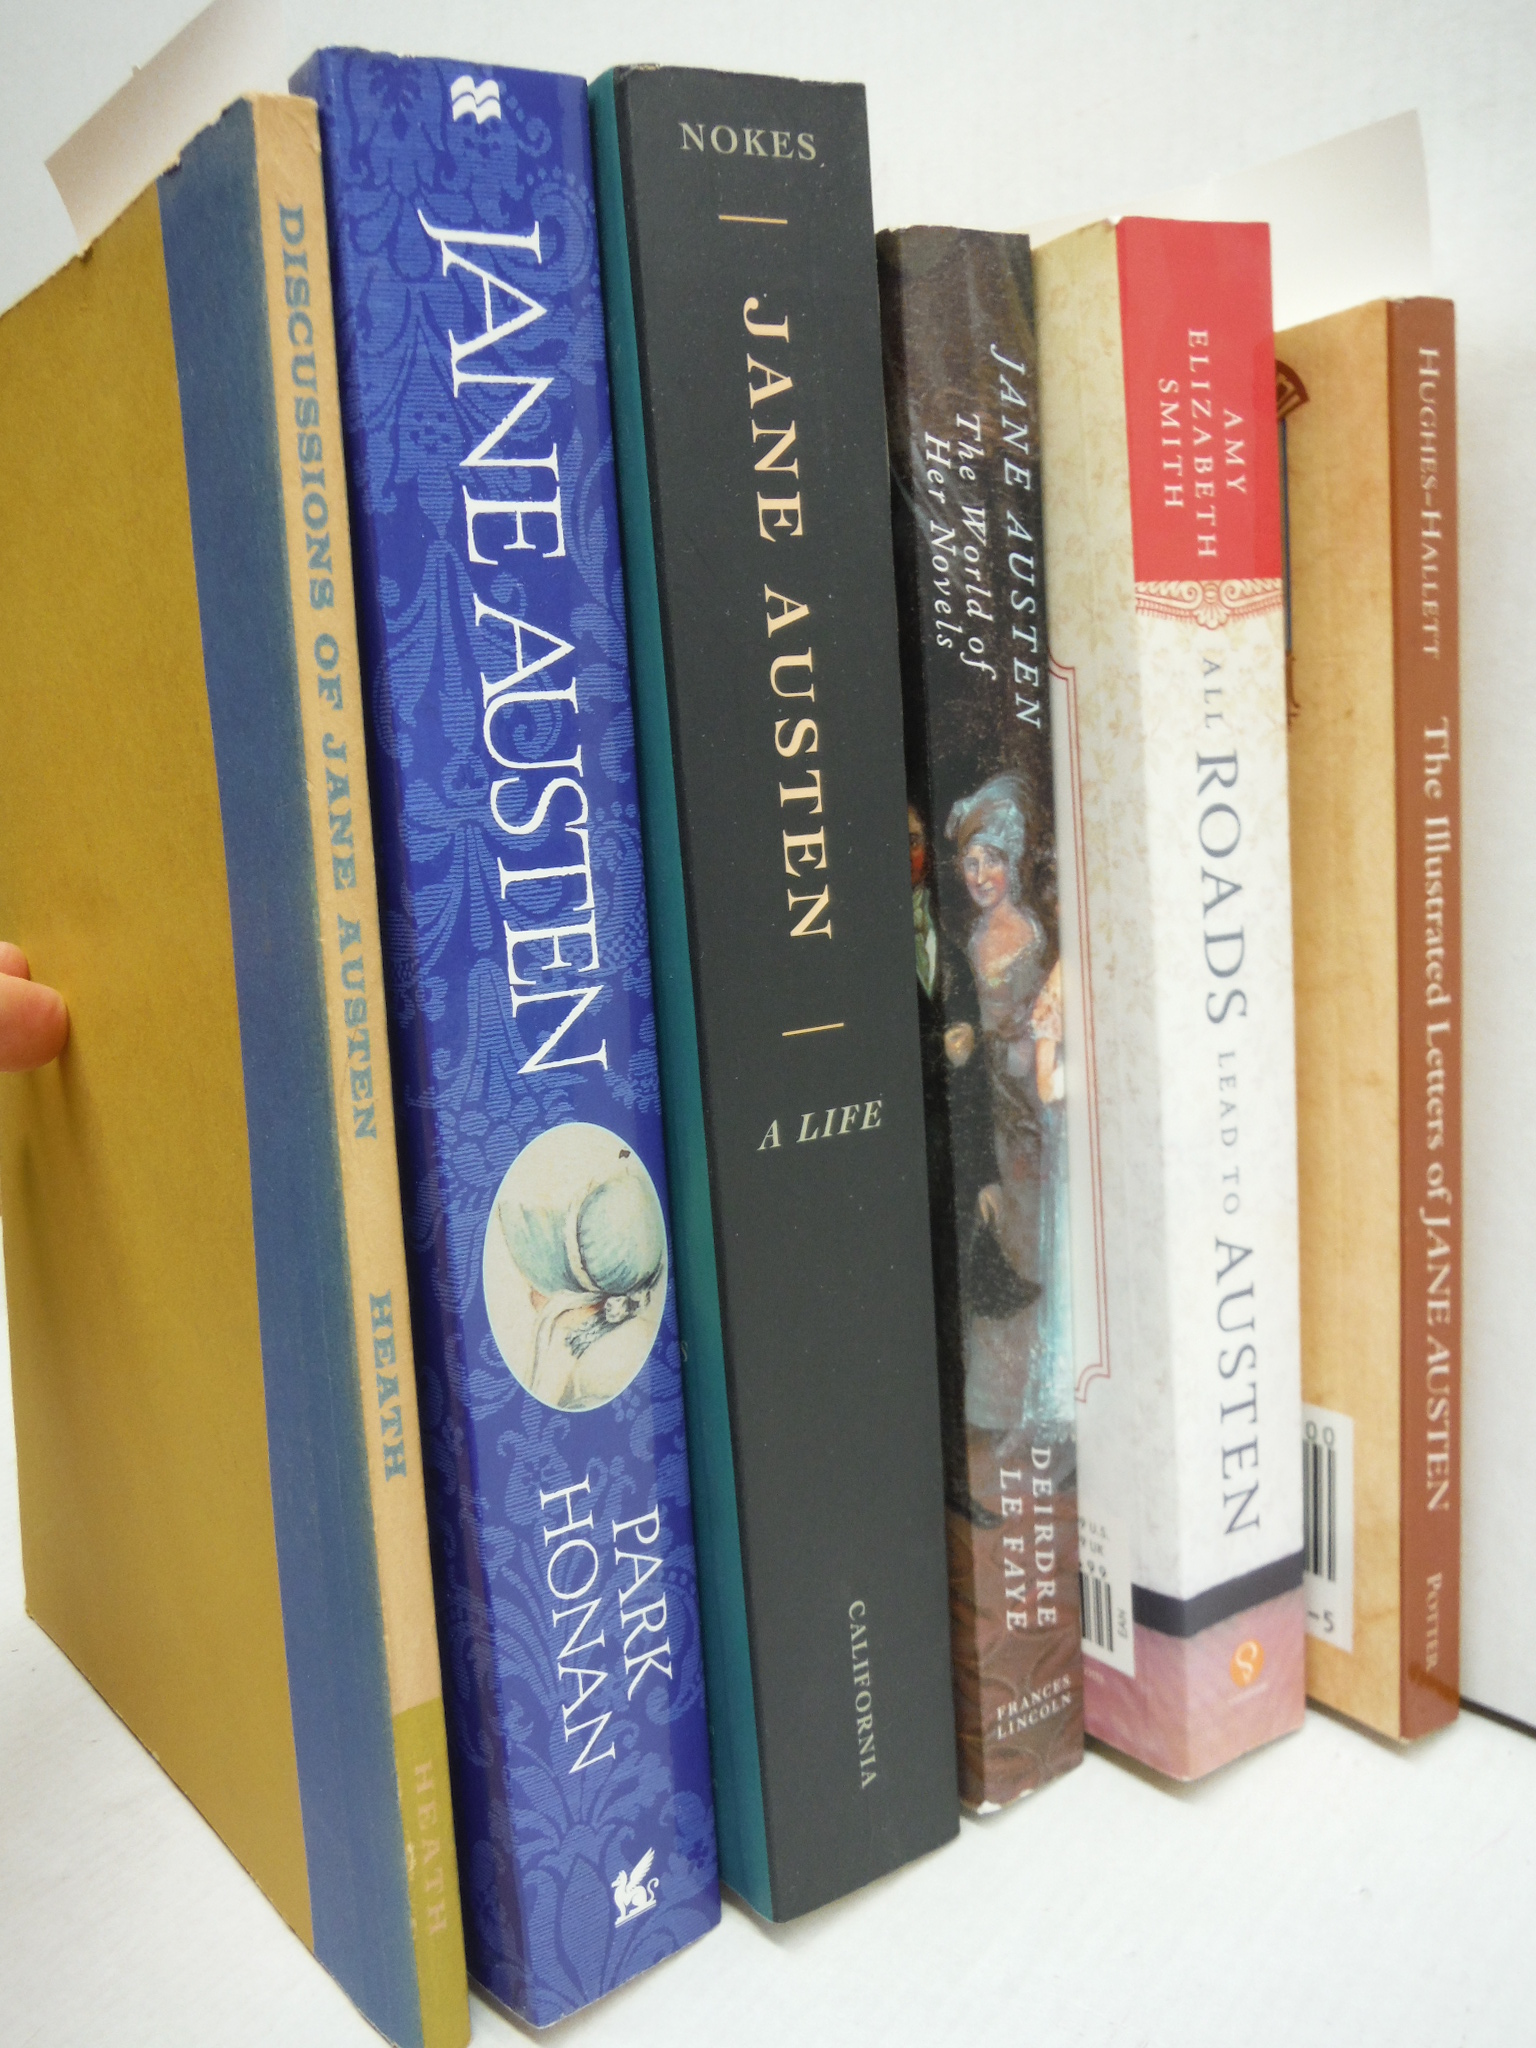 Lot of  6 paperbacks relating to Jane Austen.